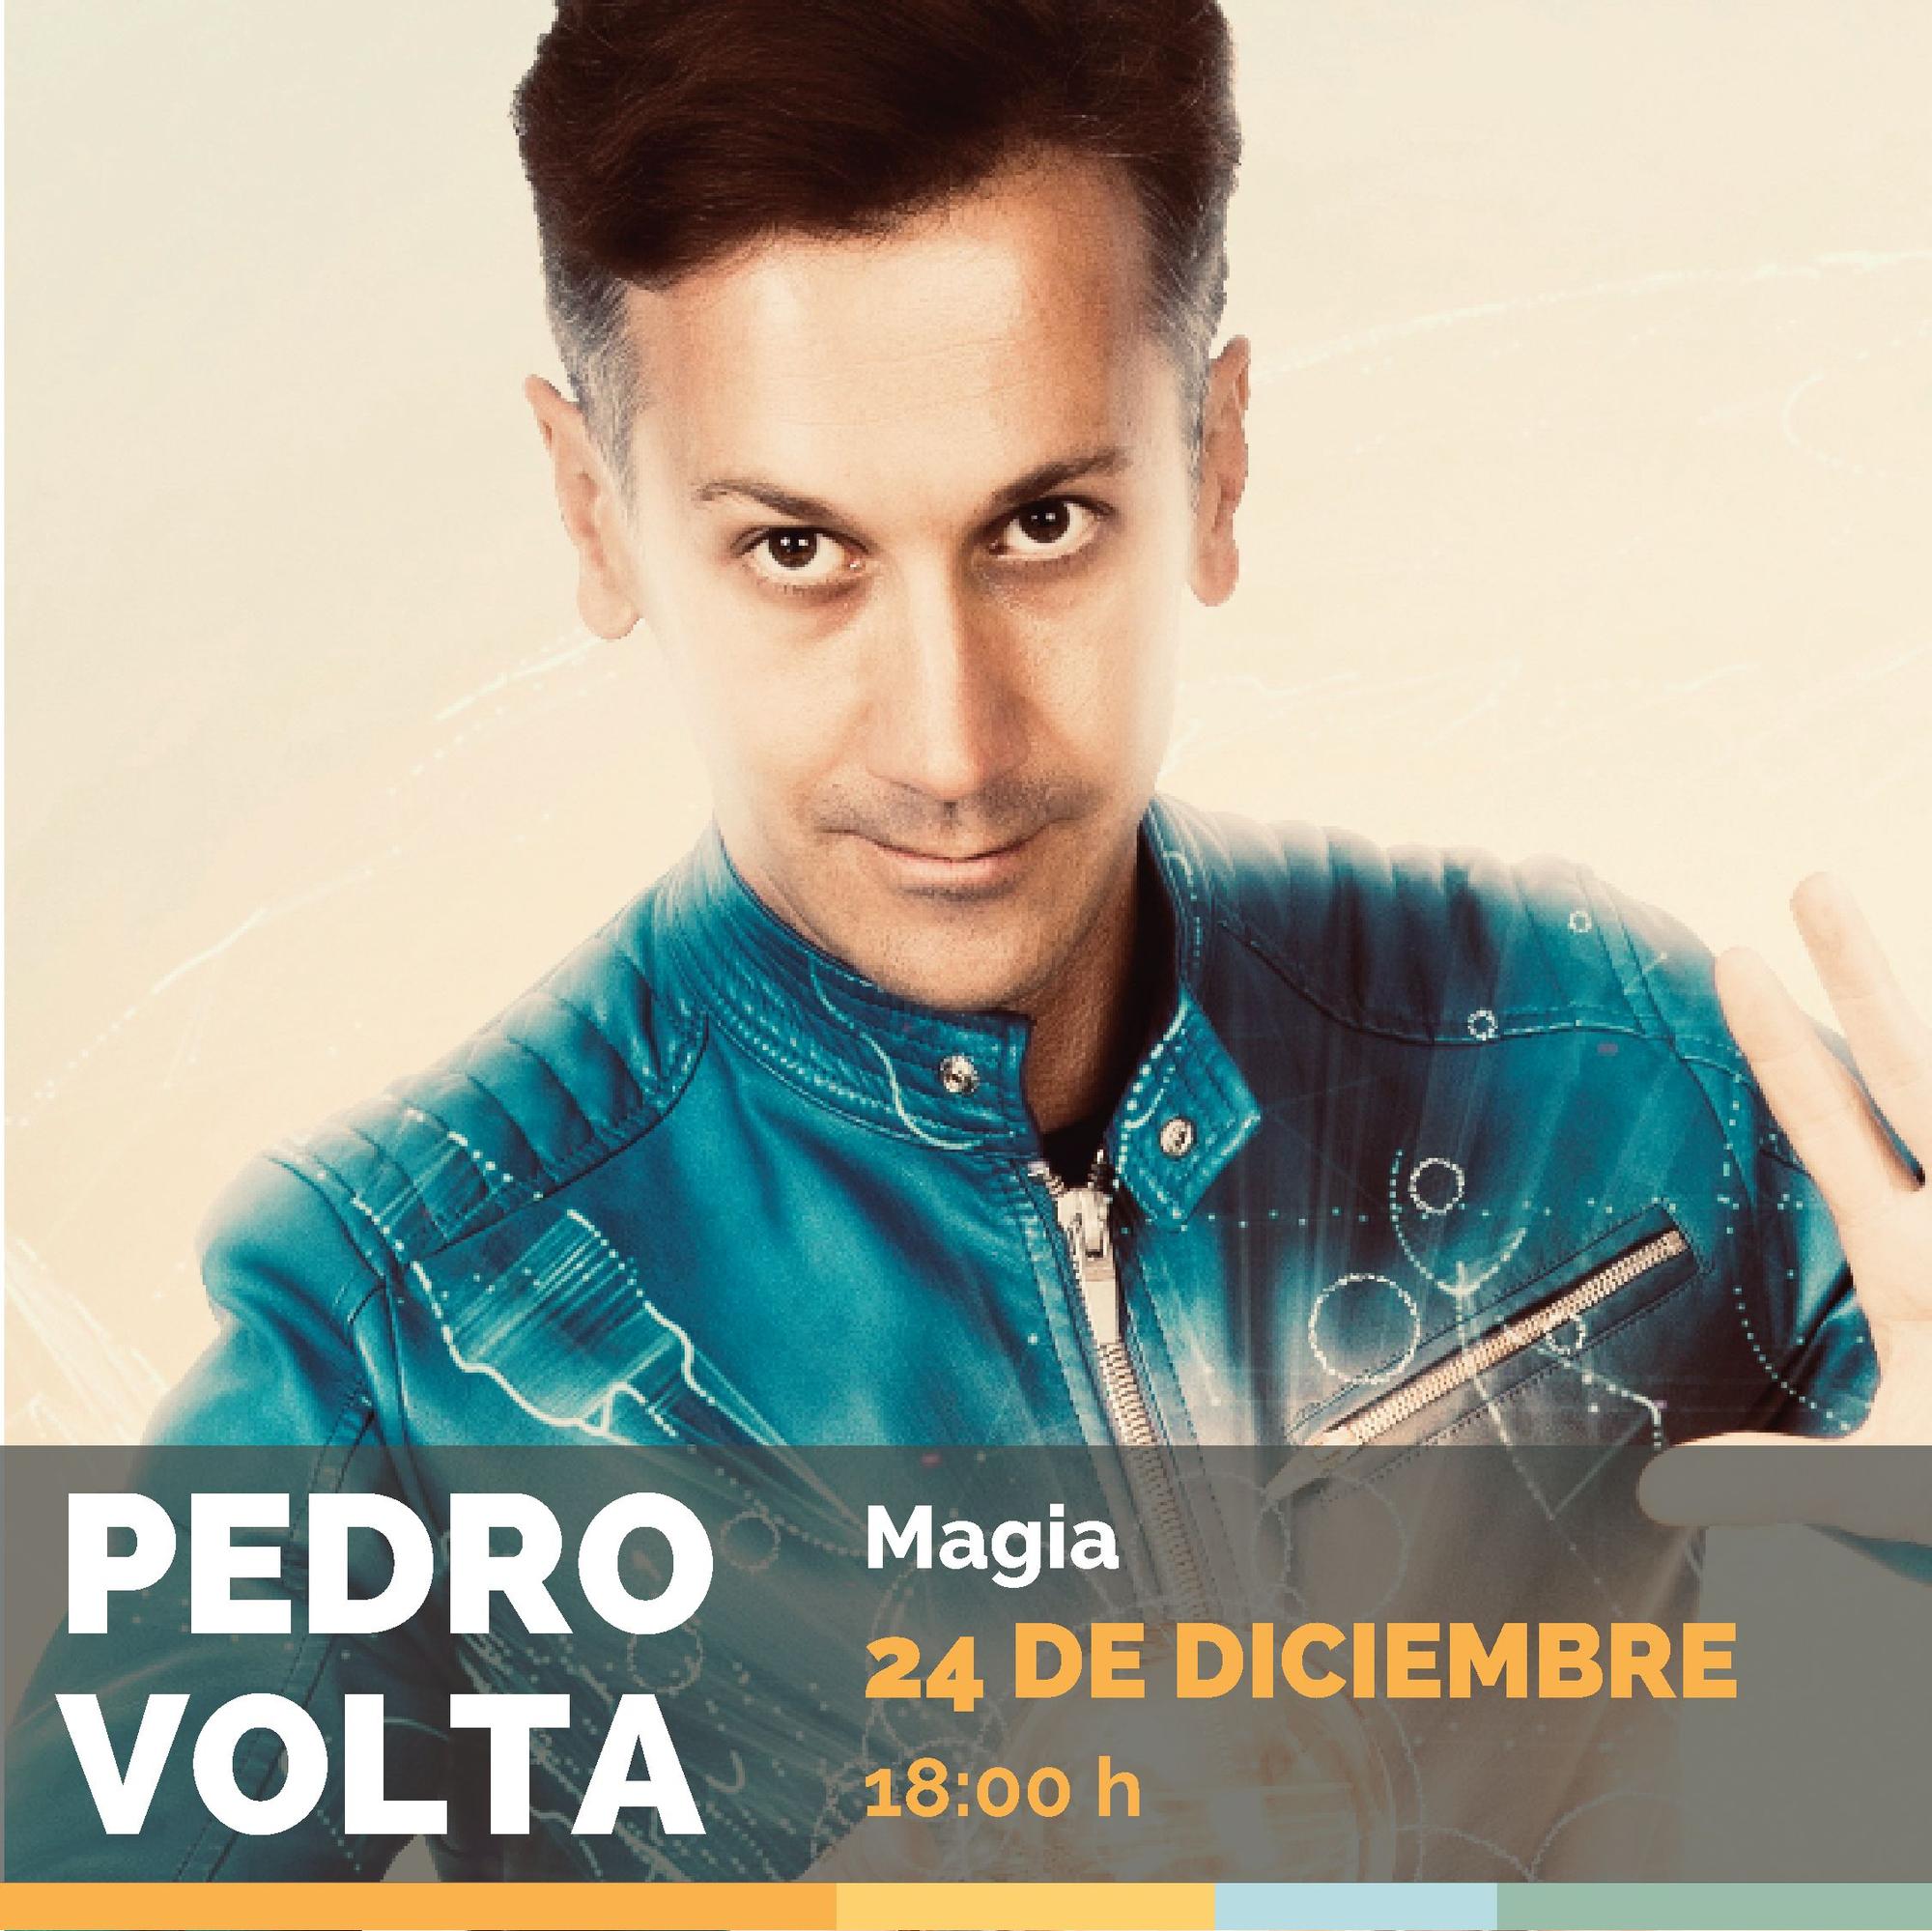 El ilusionista Pedro Volta actuará el viernes 24 a las 18h